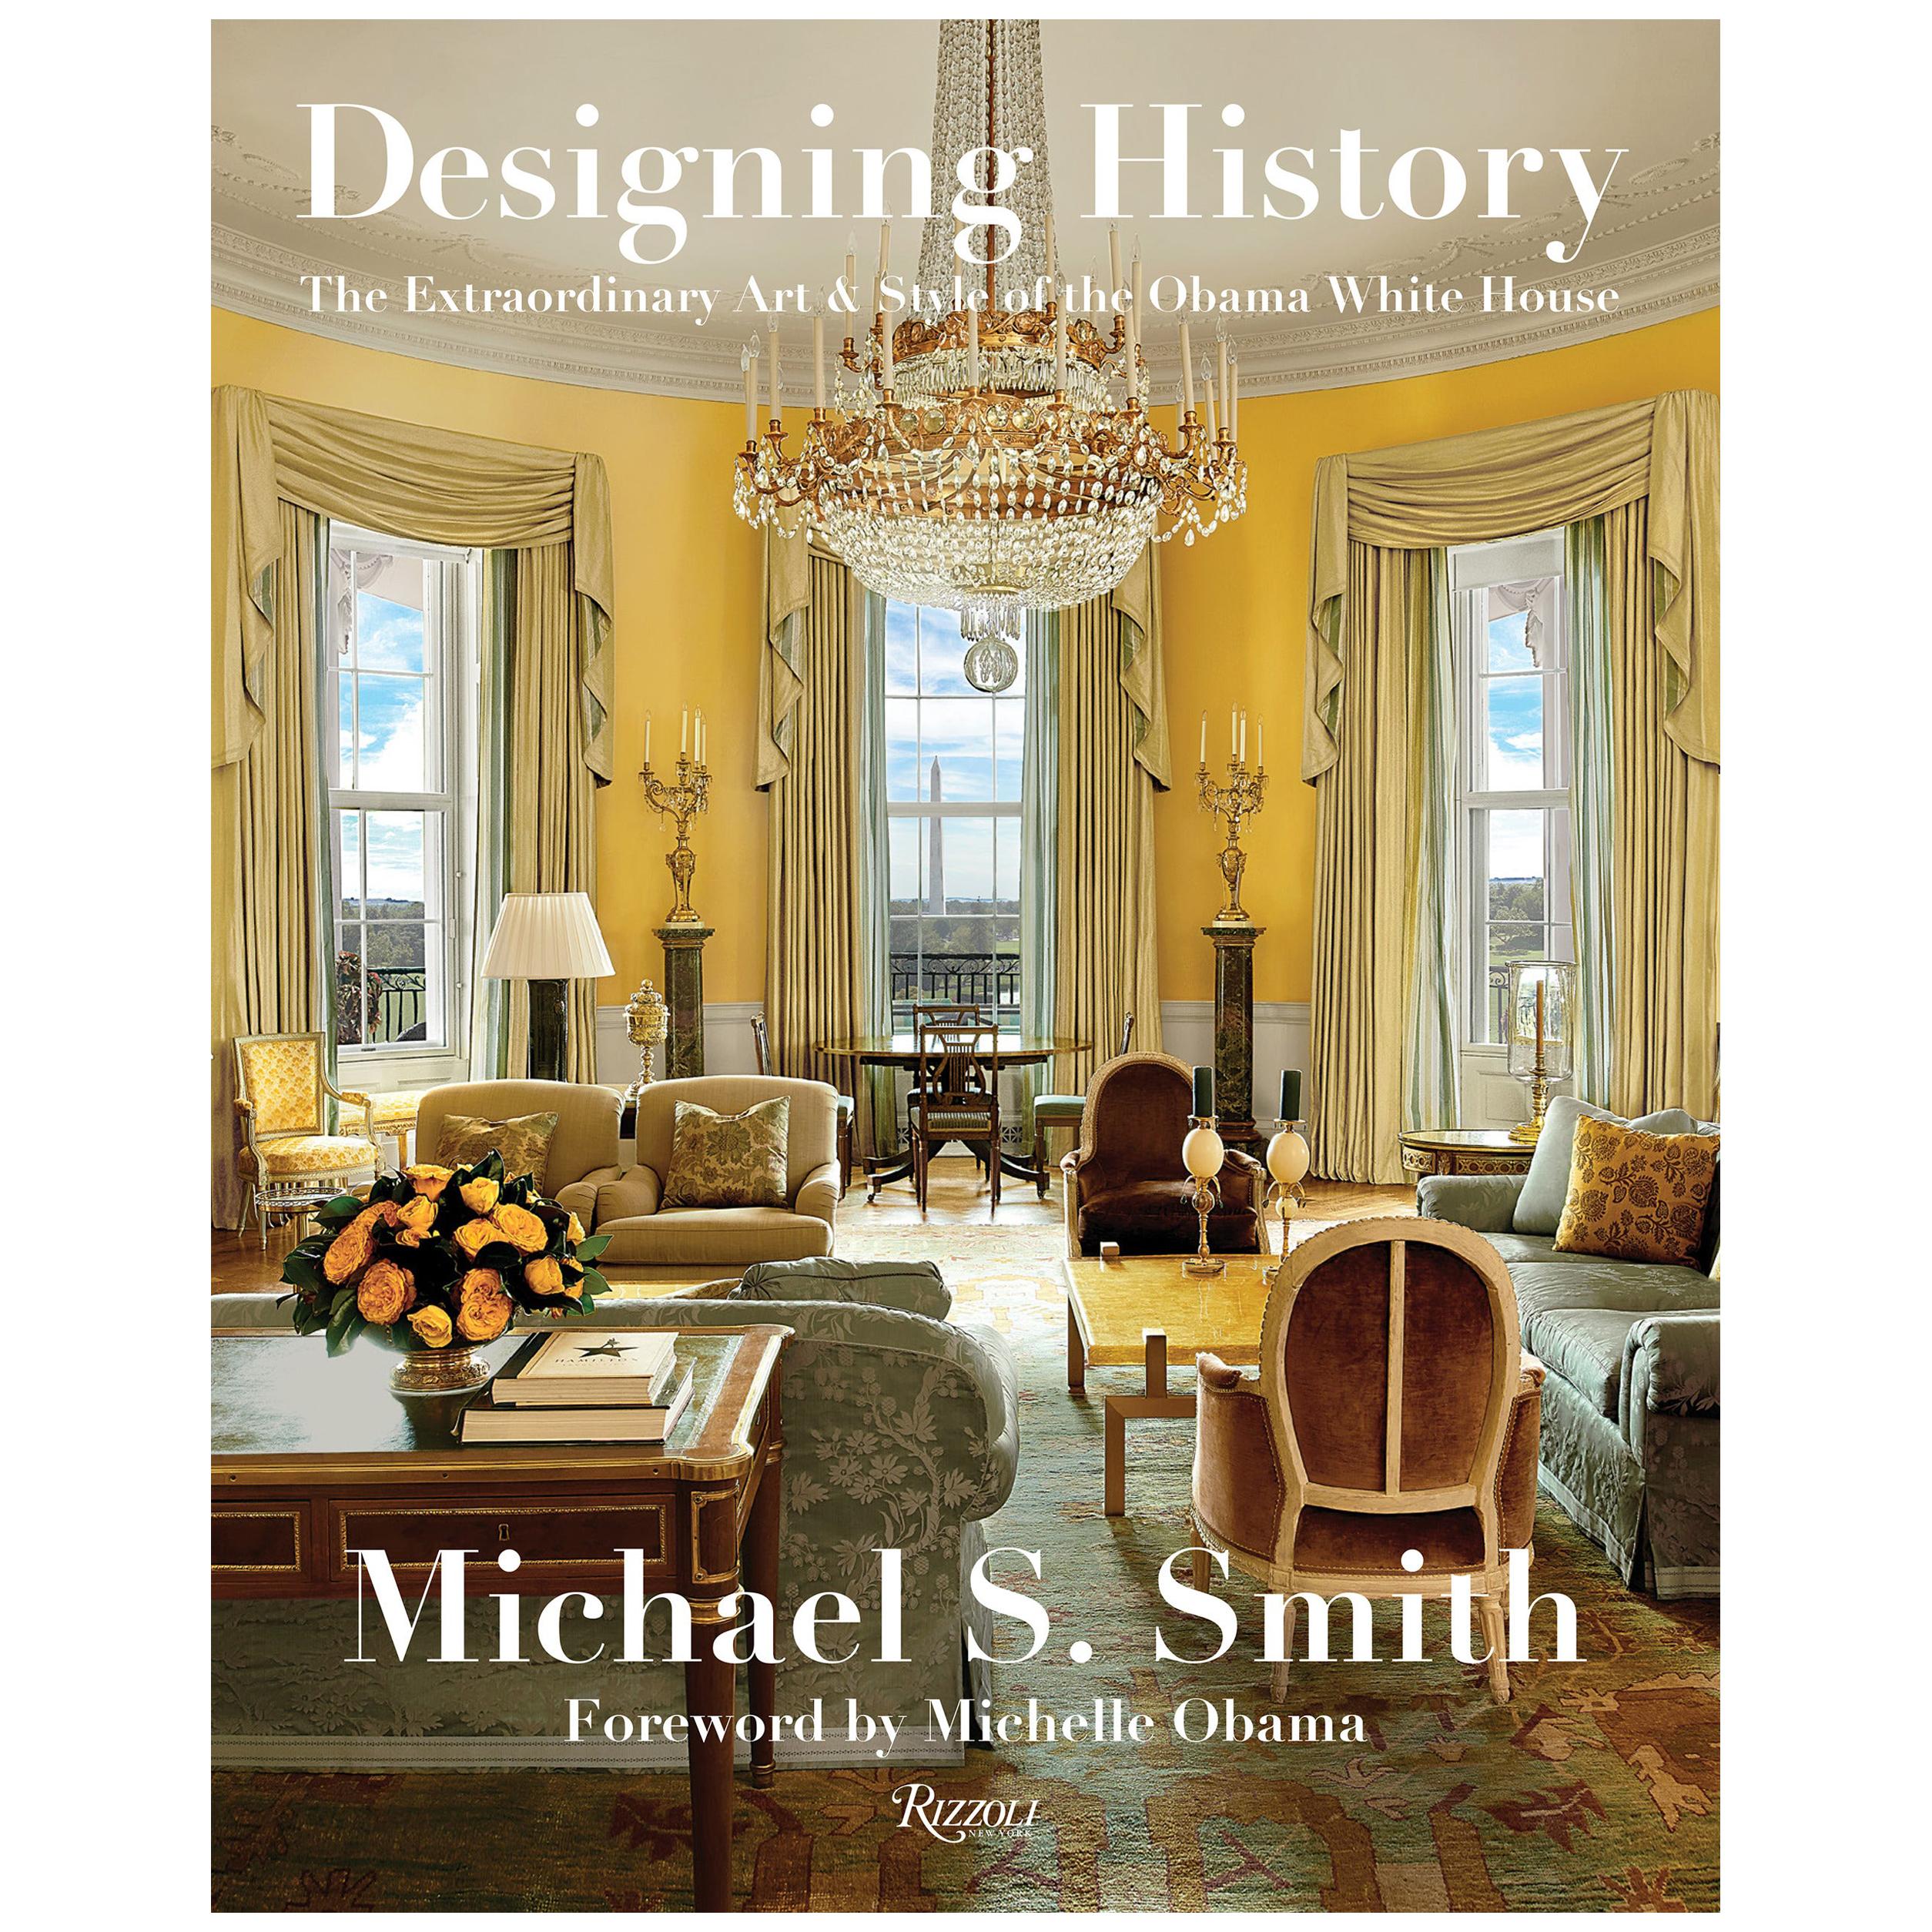 Designing History – Entwurf der außergewöhnlichen Kunst und des Stils des Weißen Hauses von Obama